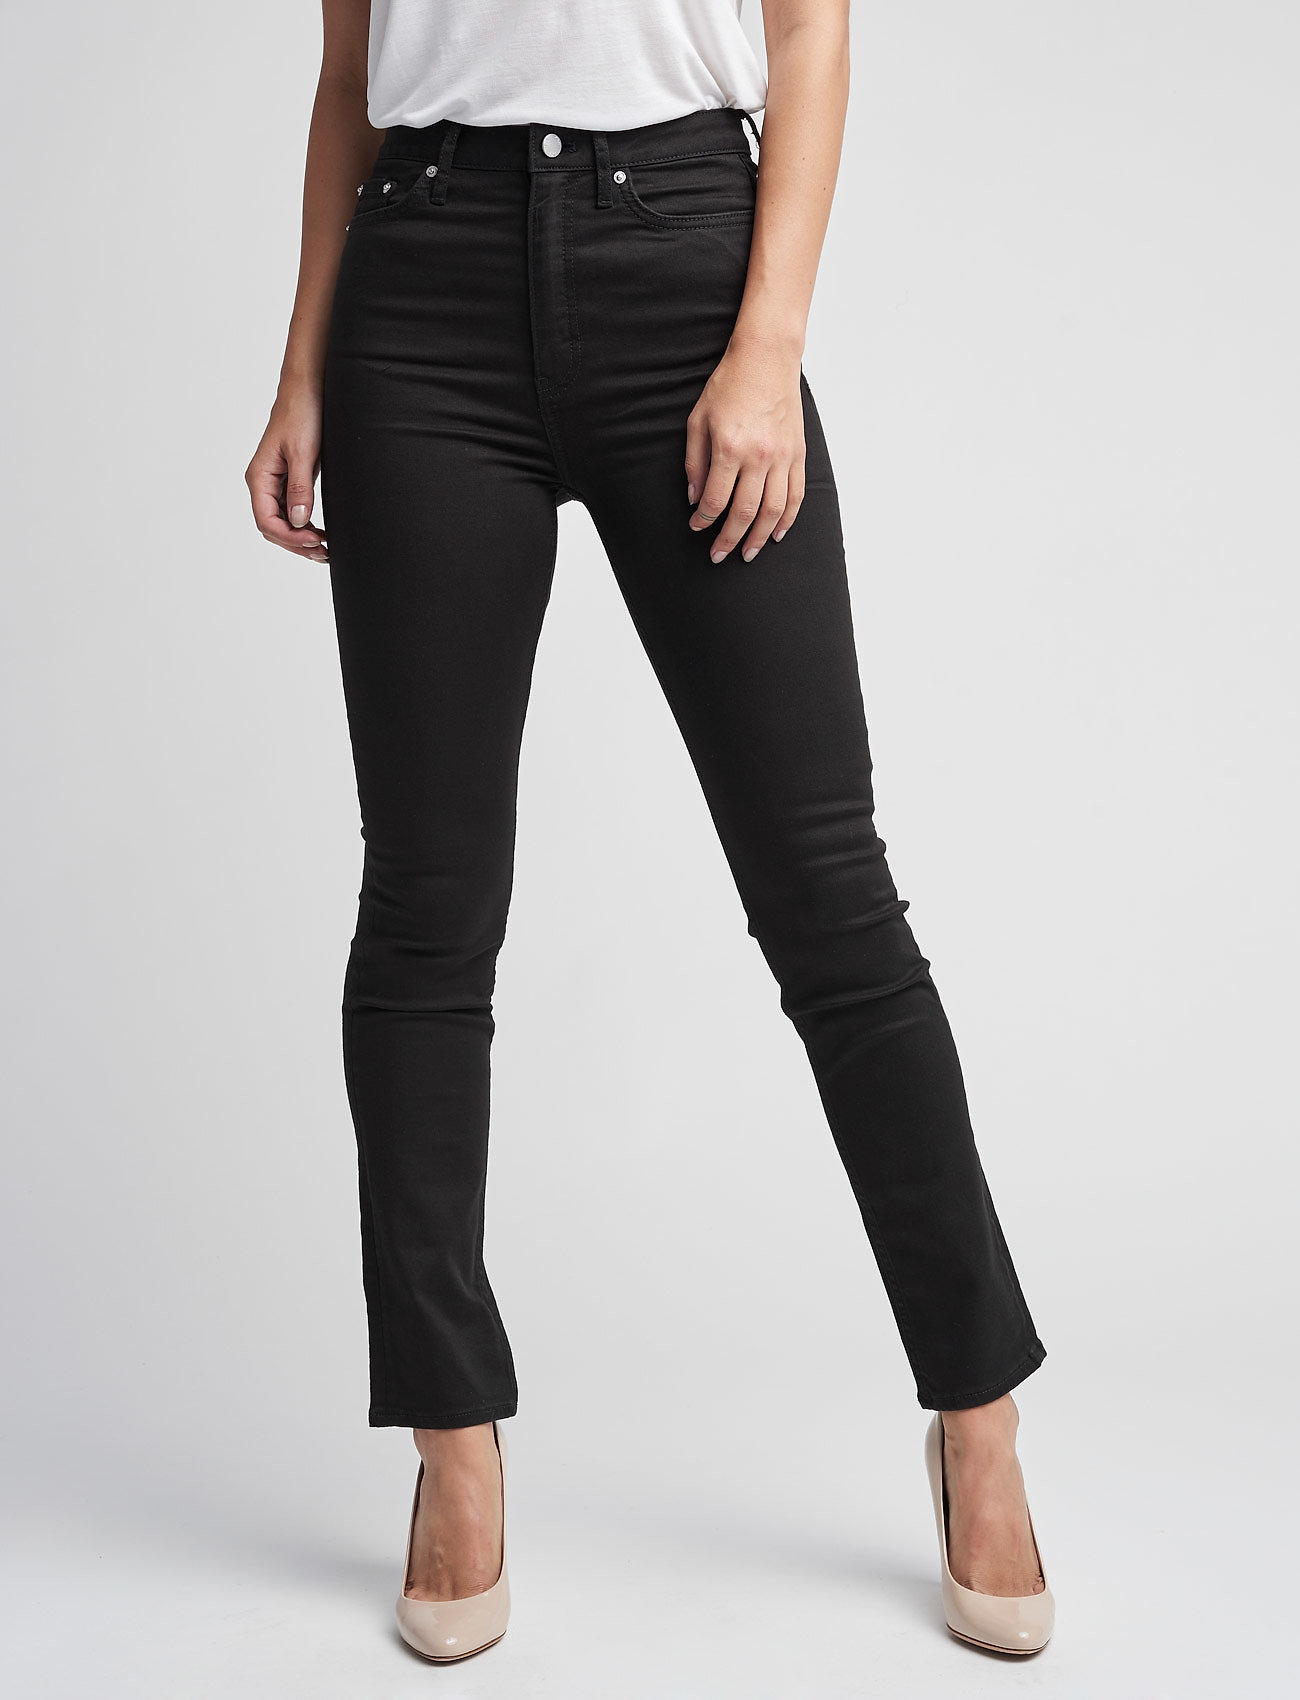 BLK DNM Jeans 20 - jeans - Boozt.com